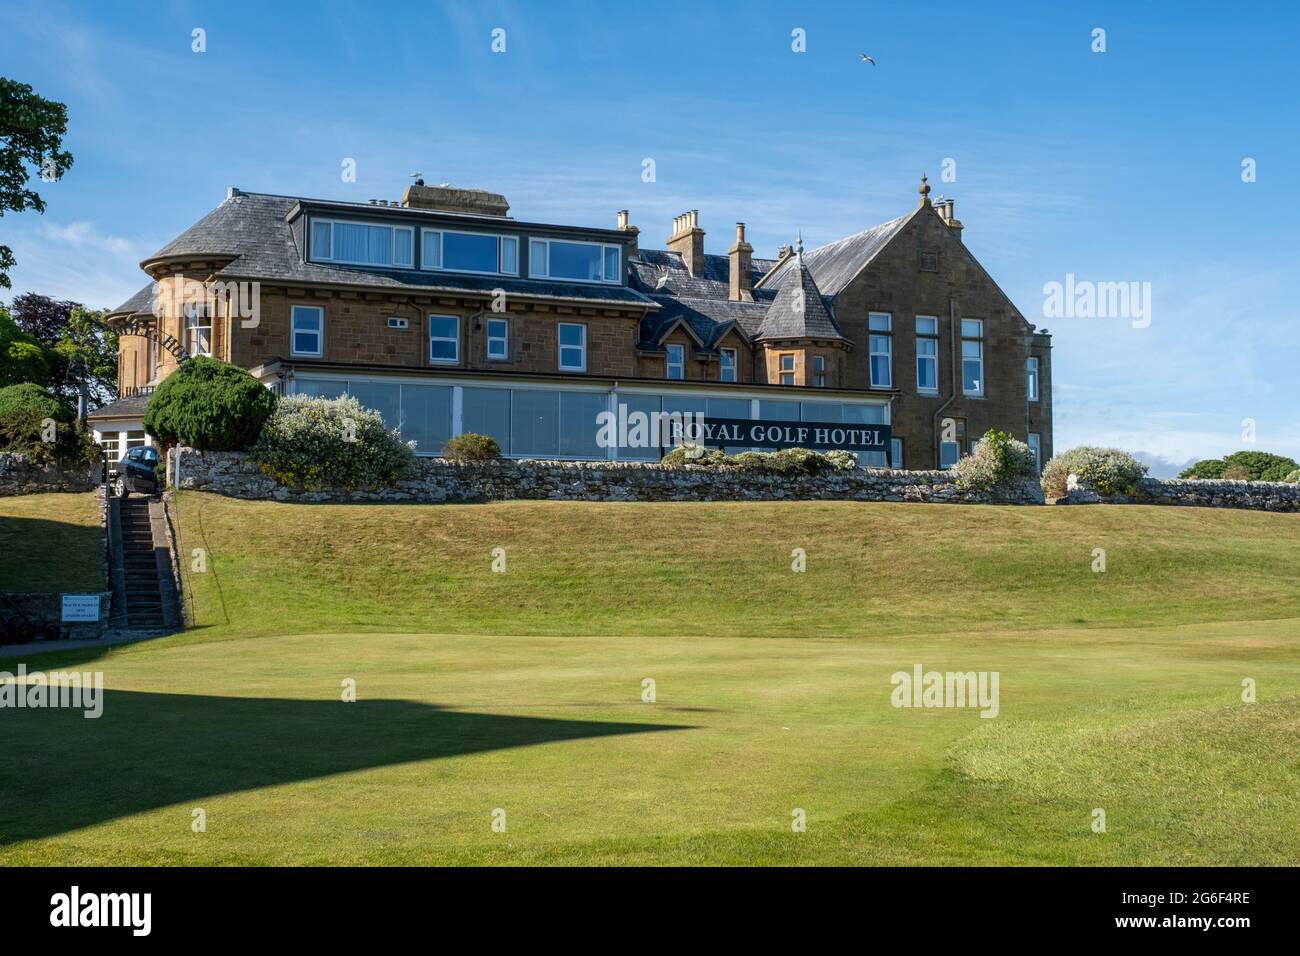 Vue extérieure du Royal Golf Hotel, surplombant les parcours de golf Royal Dornoch, Dornoch Sutherland, Écosse. Banque D'Images